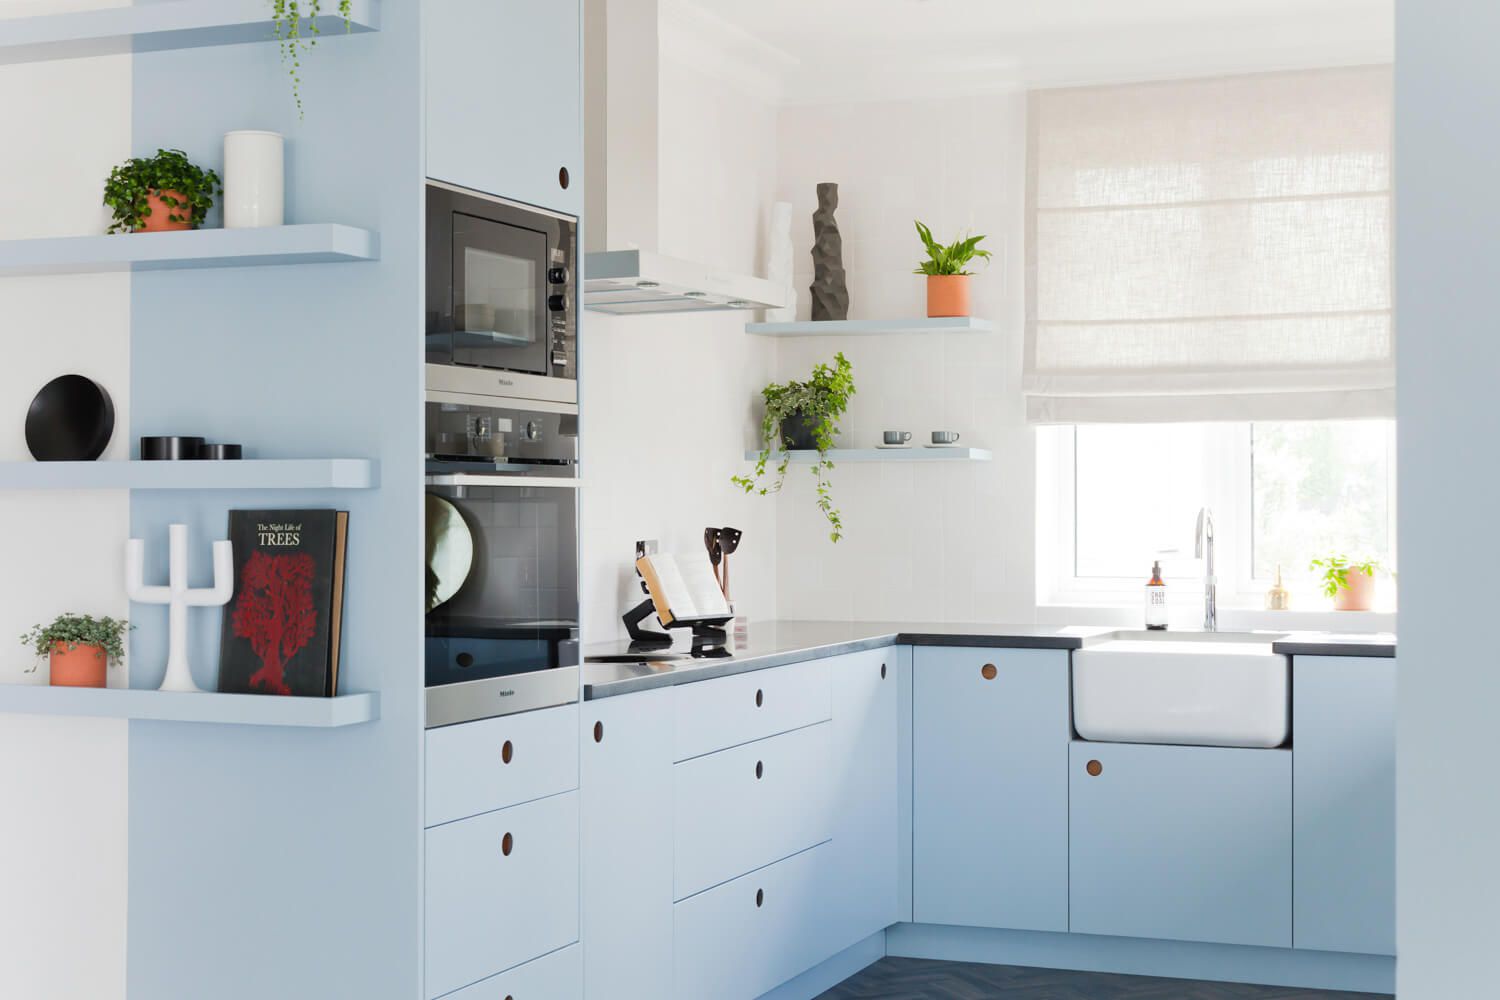 Màu xanh lam luôn là lựa chọn tuyệt vời cho phòng bếp vì nó mang lại một khoảng trời trong xanh, mặt biển tươi mát như những đợt sóng vỗ về. Đặc biệt đối với phòng bếp nhỏ thì sắc xanh pastel còn có thể “cơi nới” không gian về mặt thị giác nữa đấy!